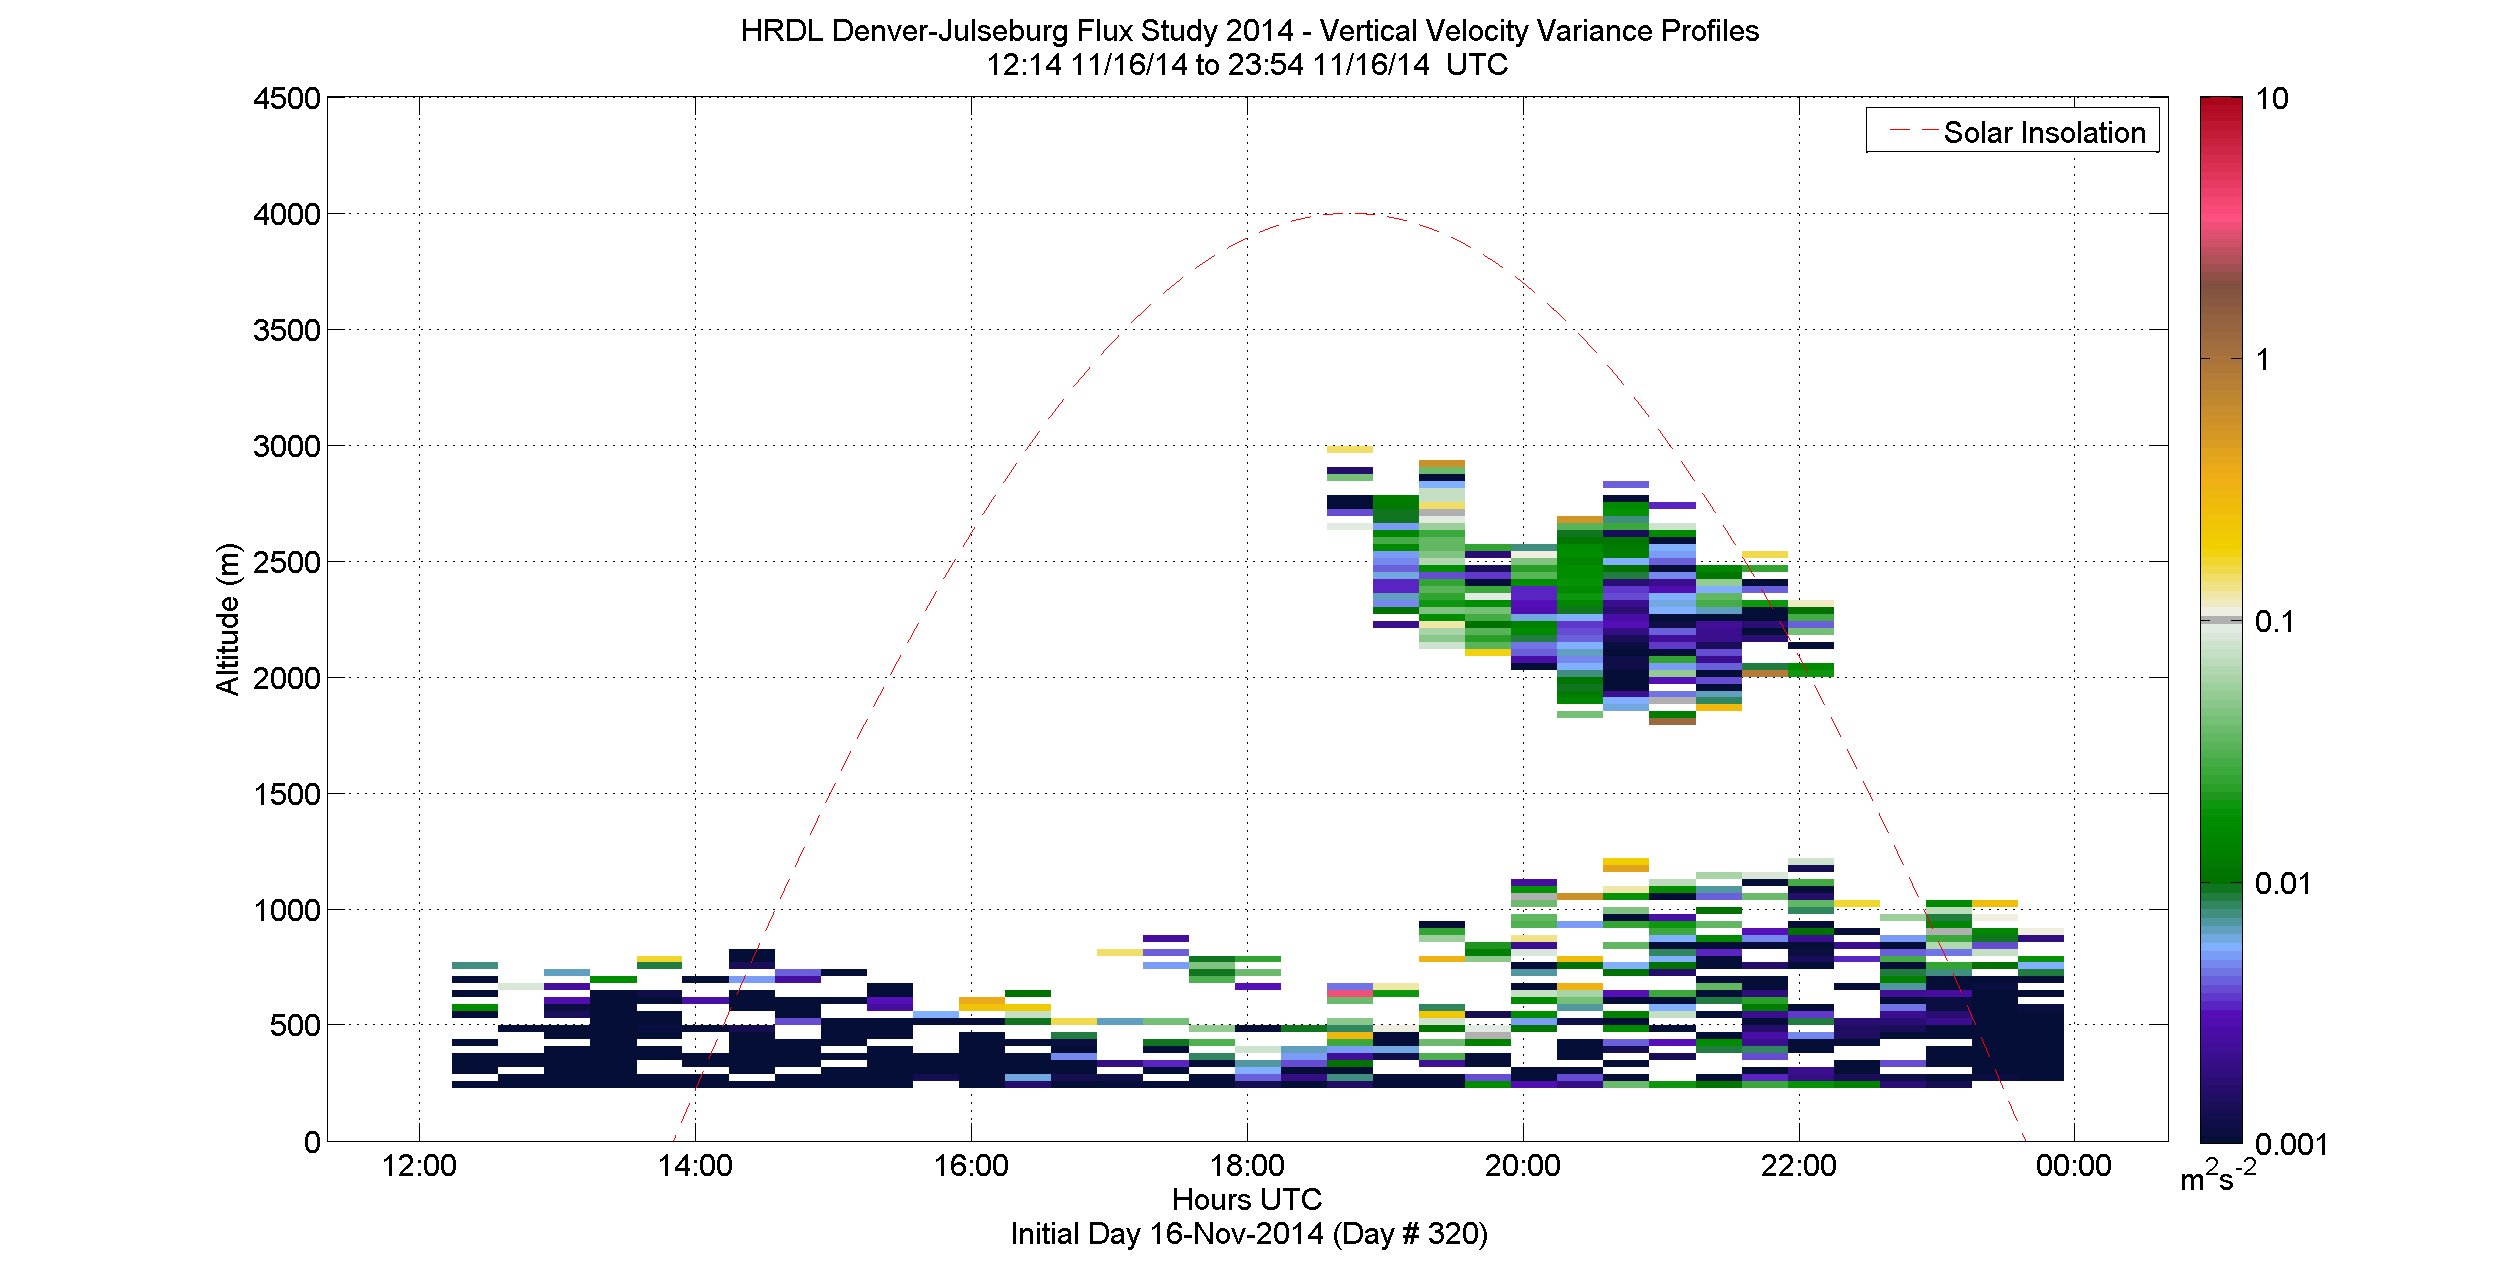 HRDL vertical variance profile - November 16 pm